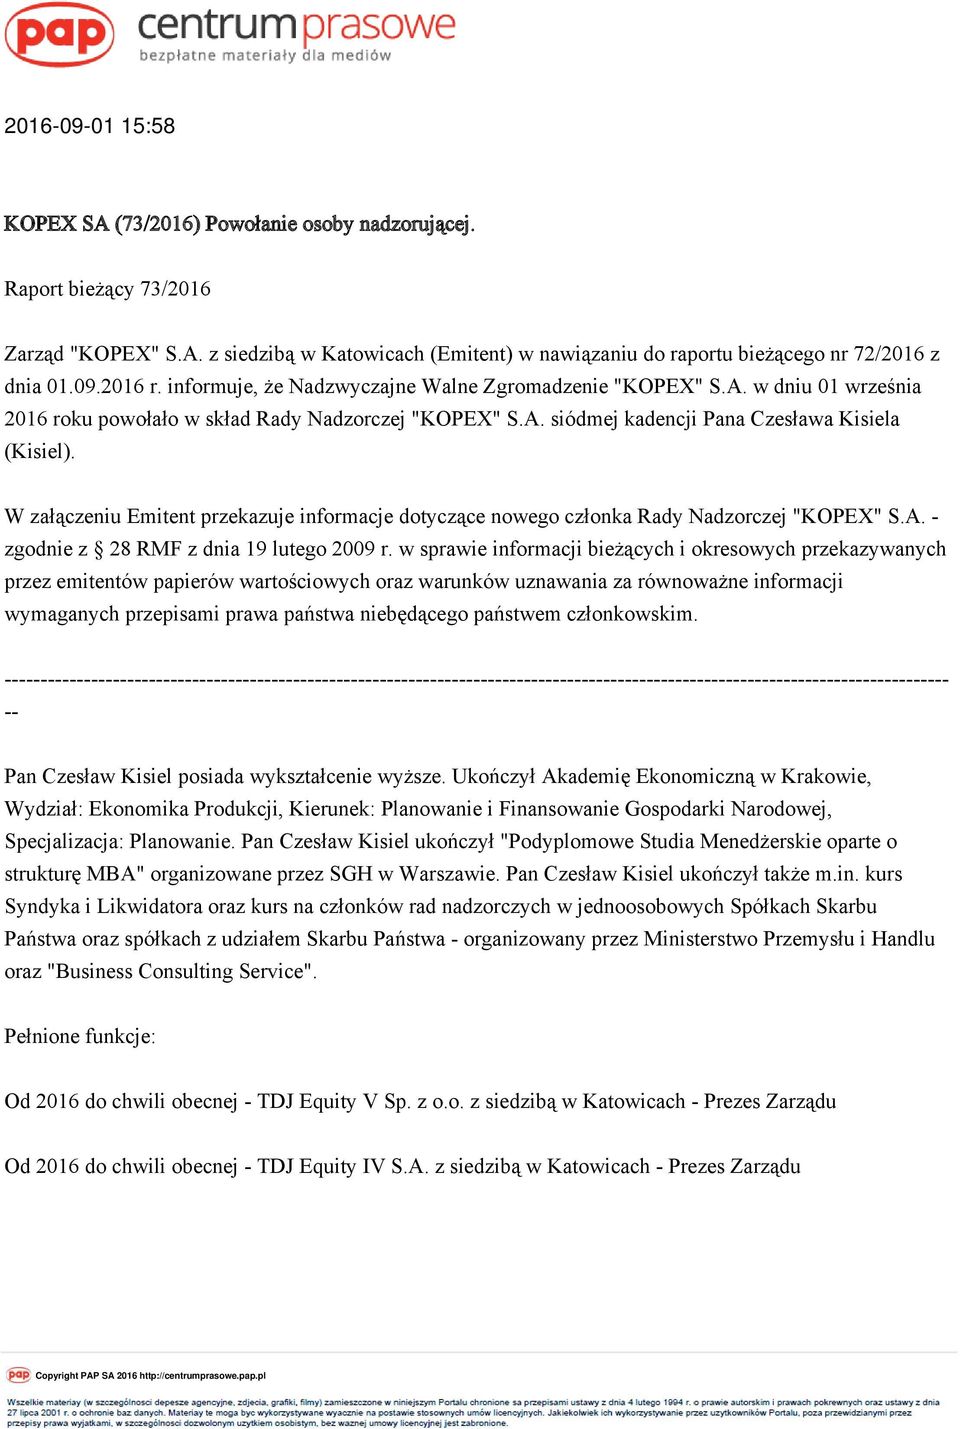 W załączeniu Emitent przekazuje informacje dotyczące nowego członka Rady Nadzorczej "KOPEX" S.A. - zgodnie z 28 RMF z dnia 19 lutego 2009 r.